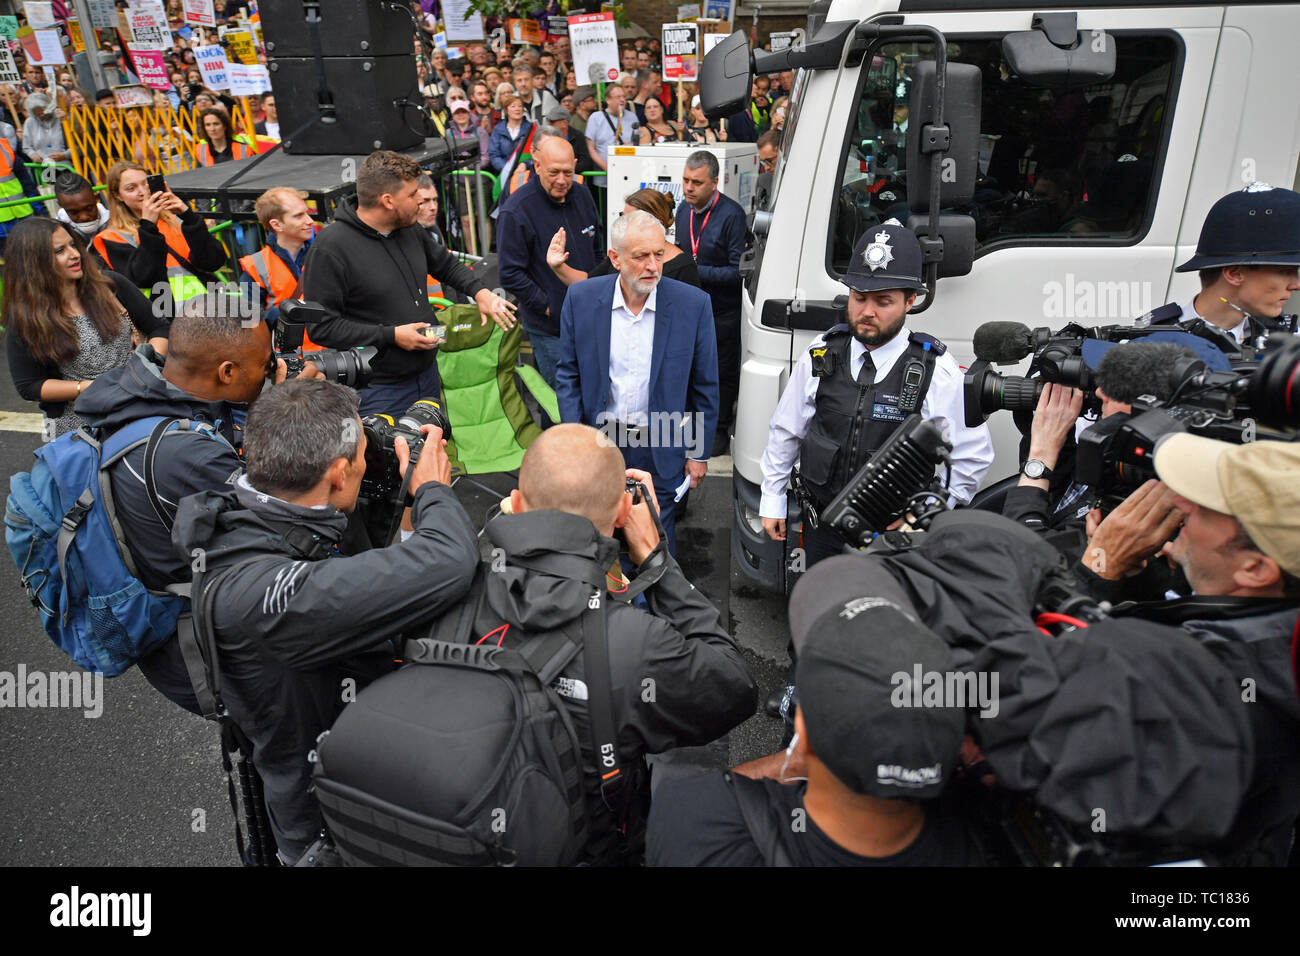 Dirigente del partido laborista Jeremy Corbyn llega a hablar en un anti-Trump protesta en Whitehall, Londres, en el segundo día de la visita de estado al Reino Unido por el Presidente de EEUU, Donald Trump. Foto de stock